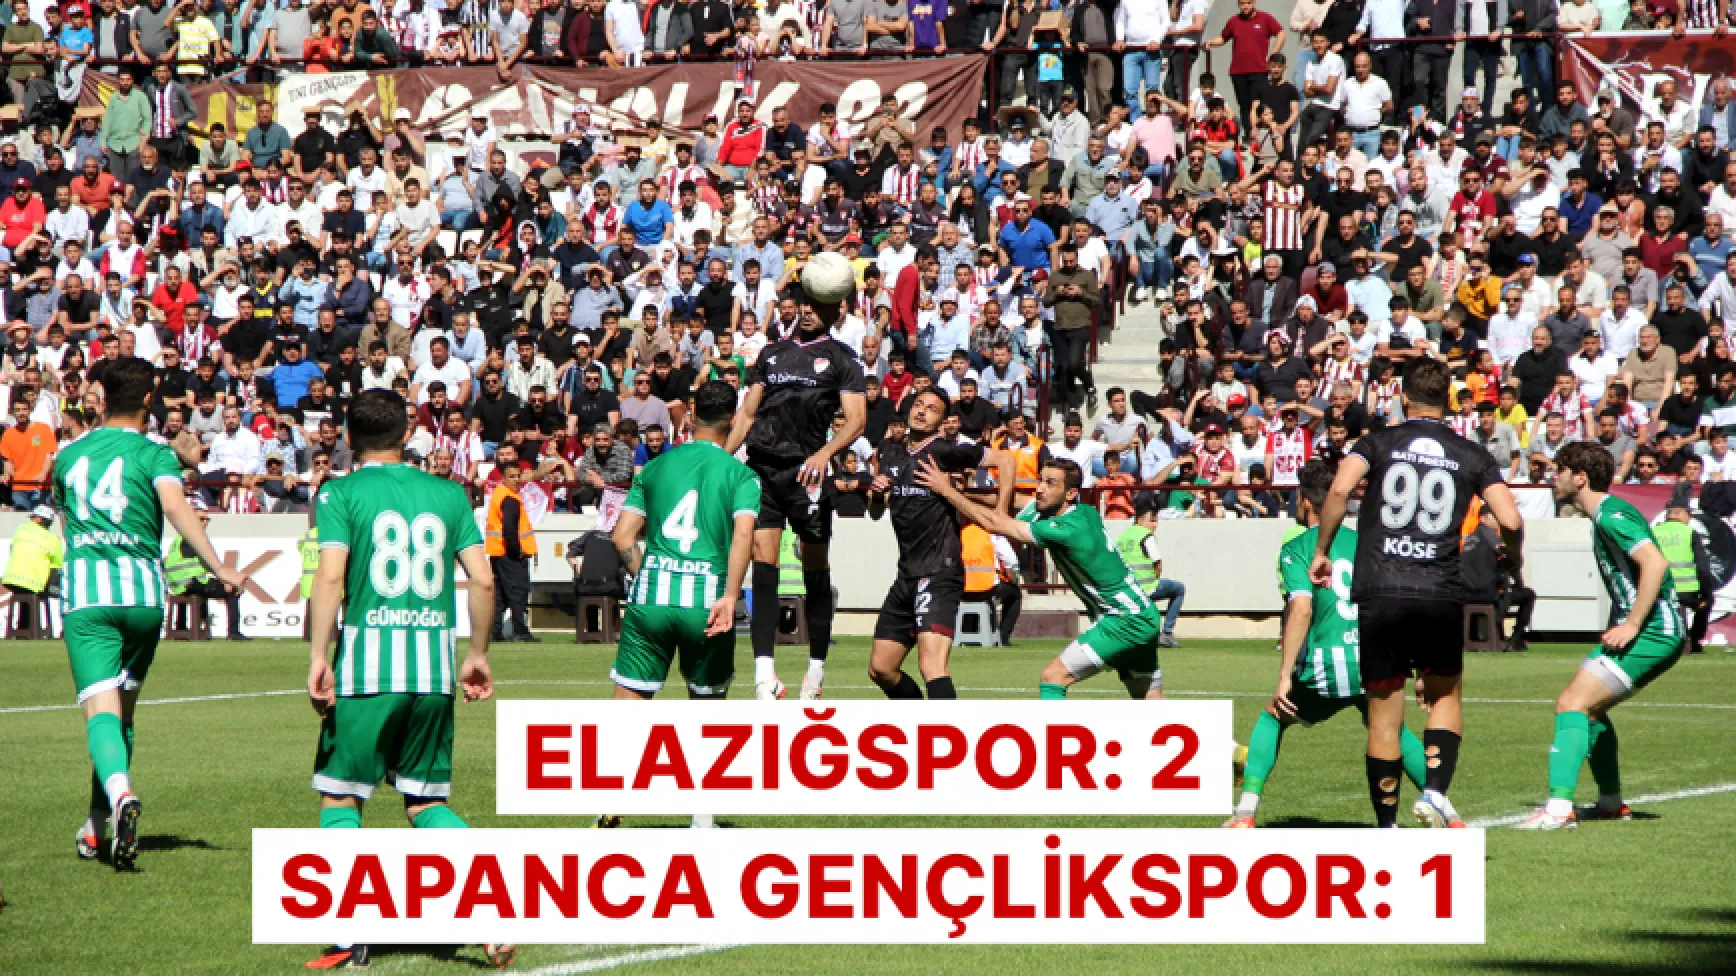 Elazığspor 2 - 1 Sapanca Gençlikspor